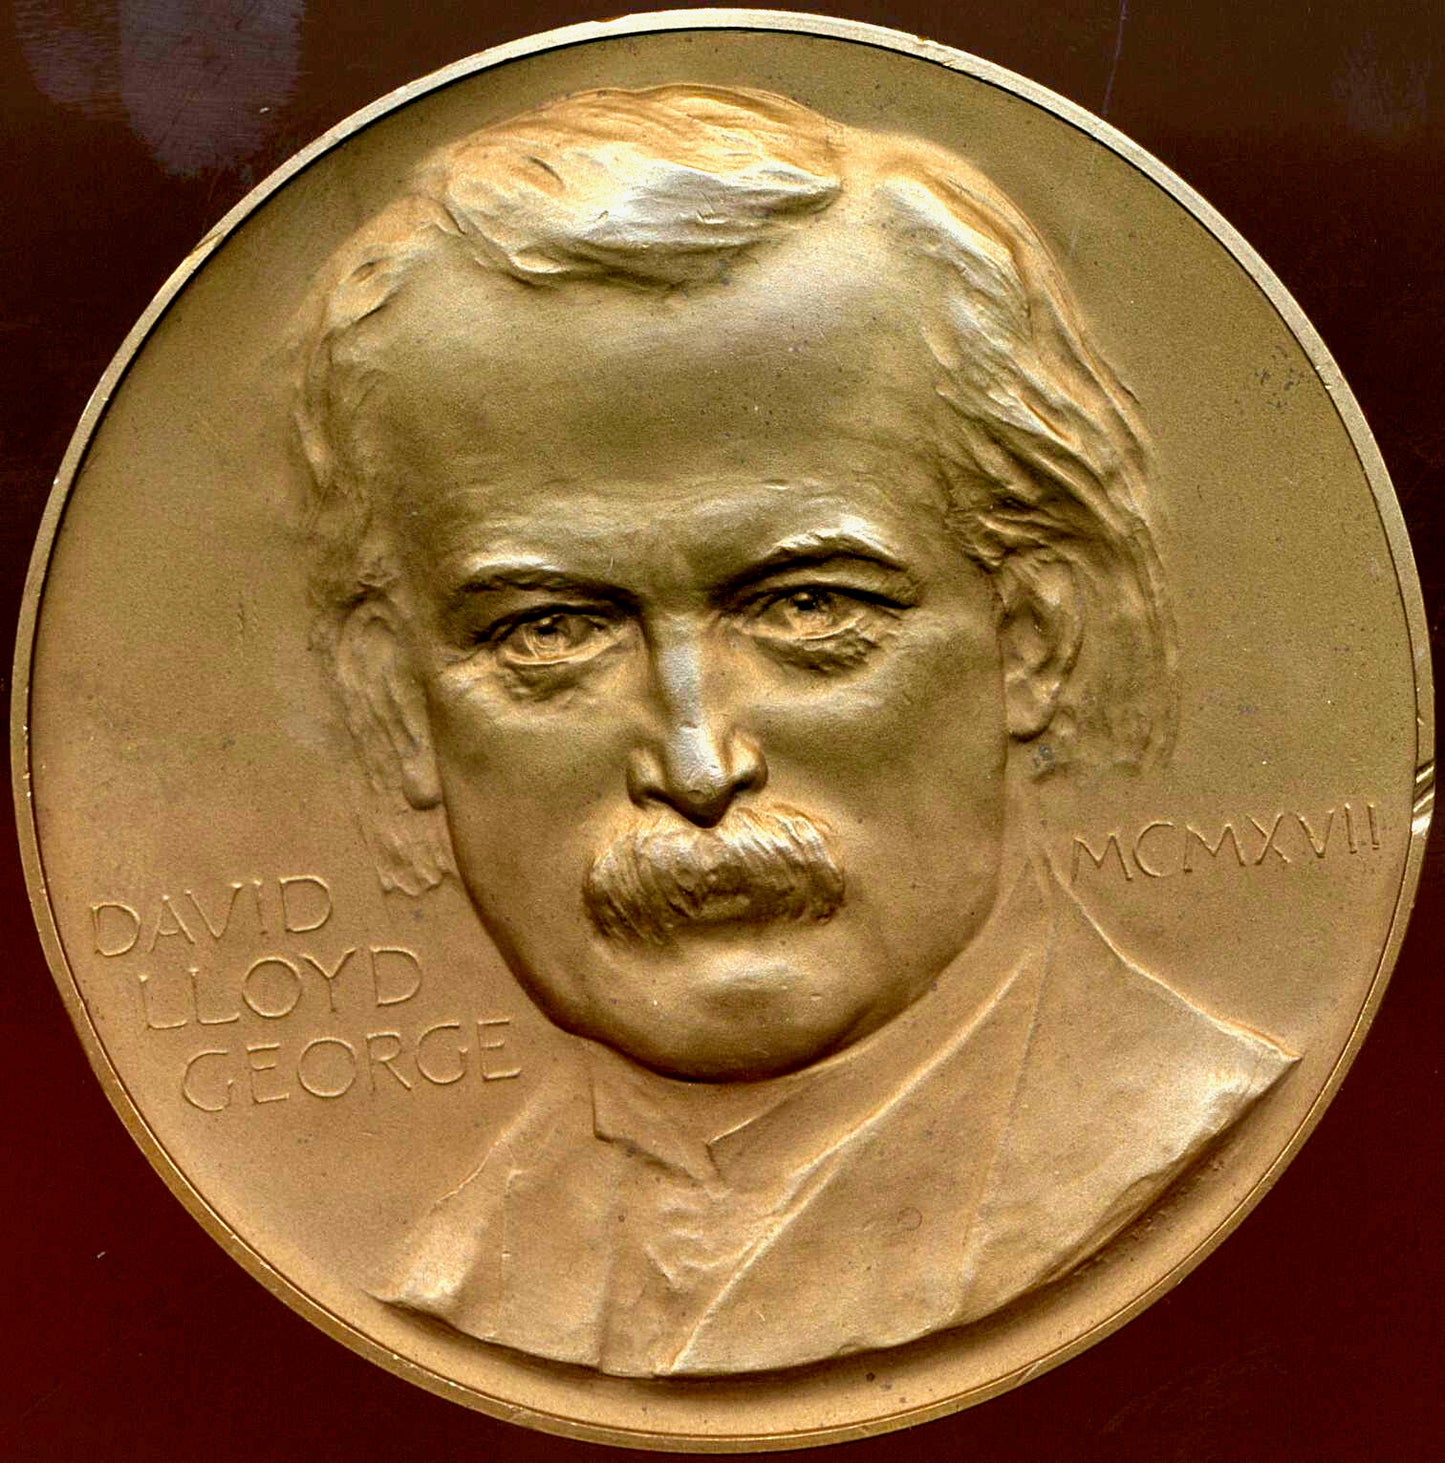 1917 David Lloyd George 64mm bronze medal by Frank Bowcher BHM 4130 E1959 NEF/EF